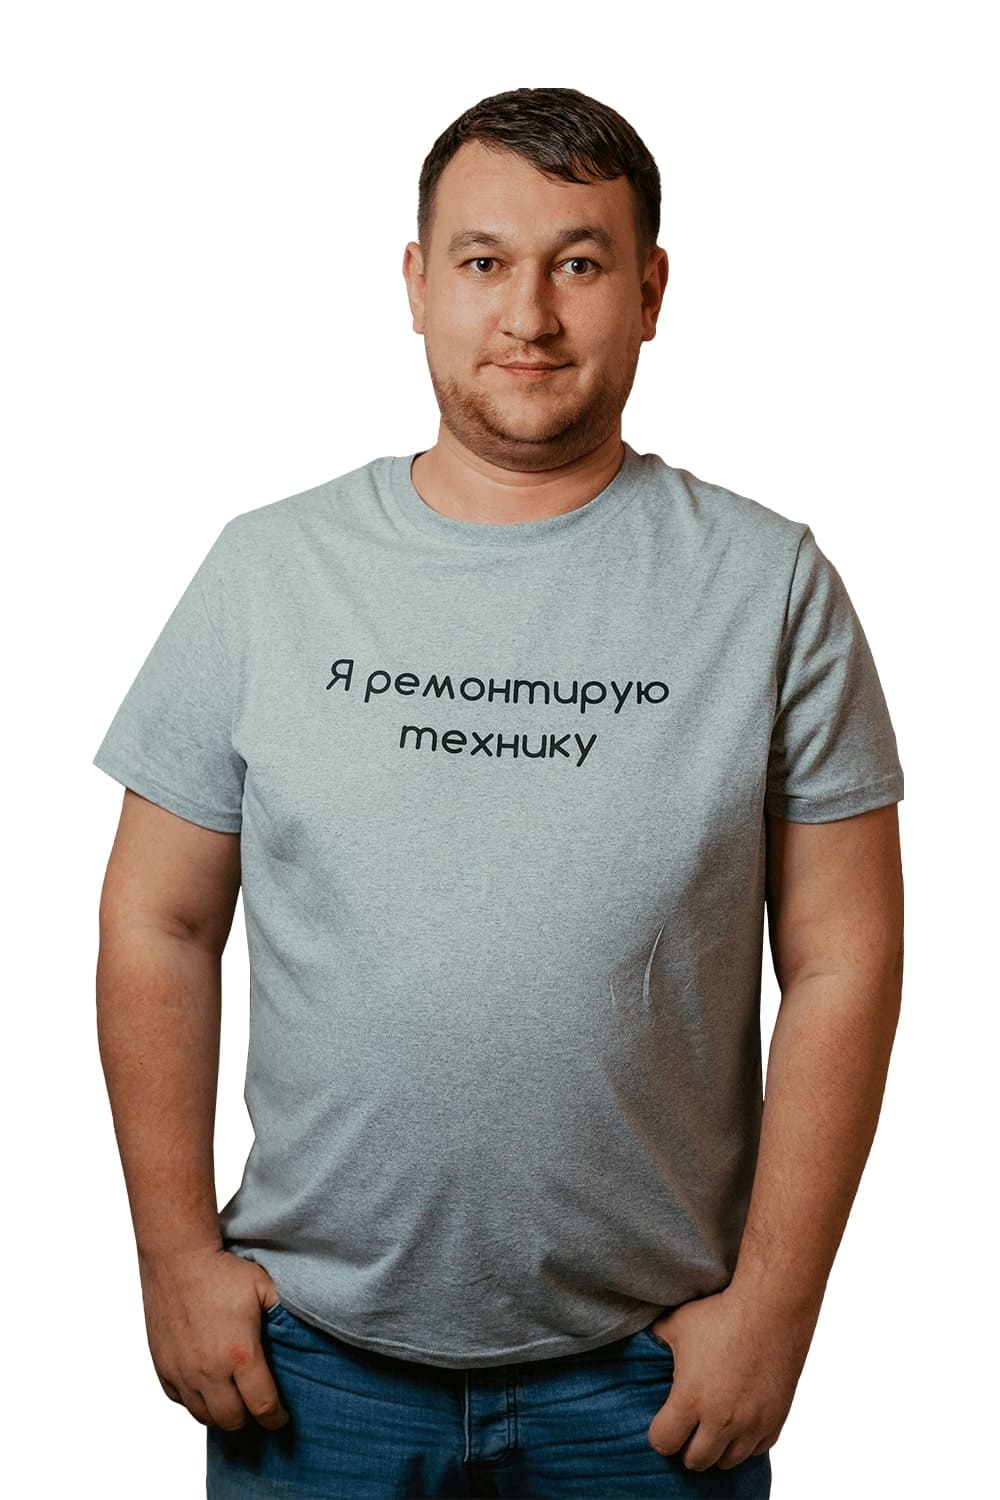 Доктор Техно Интернет Магазин Москва